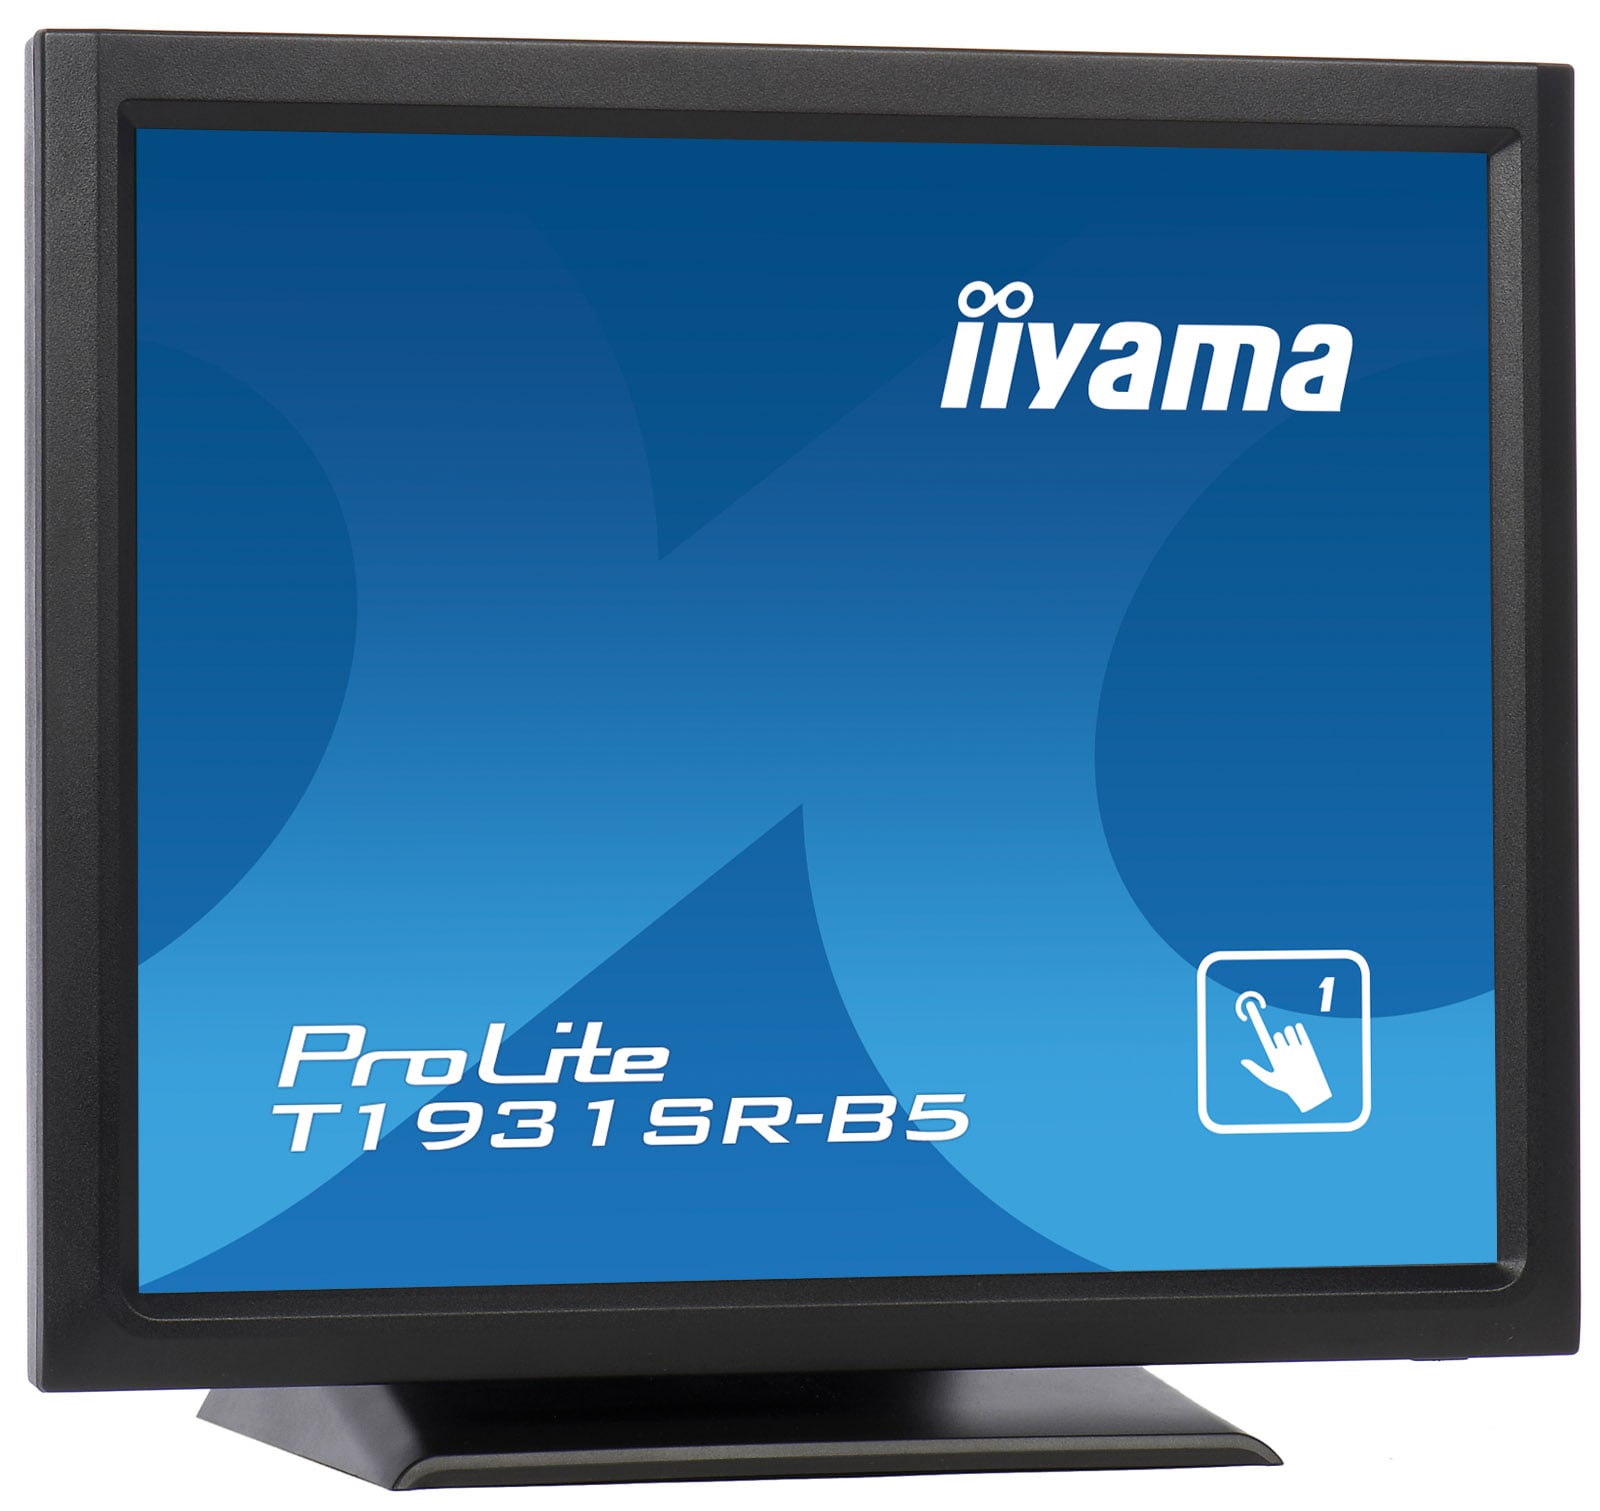 Интерактивный дисплей Iiyama T1931SR-B5